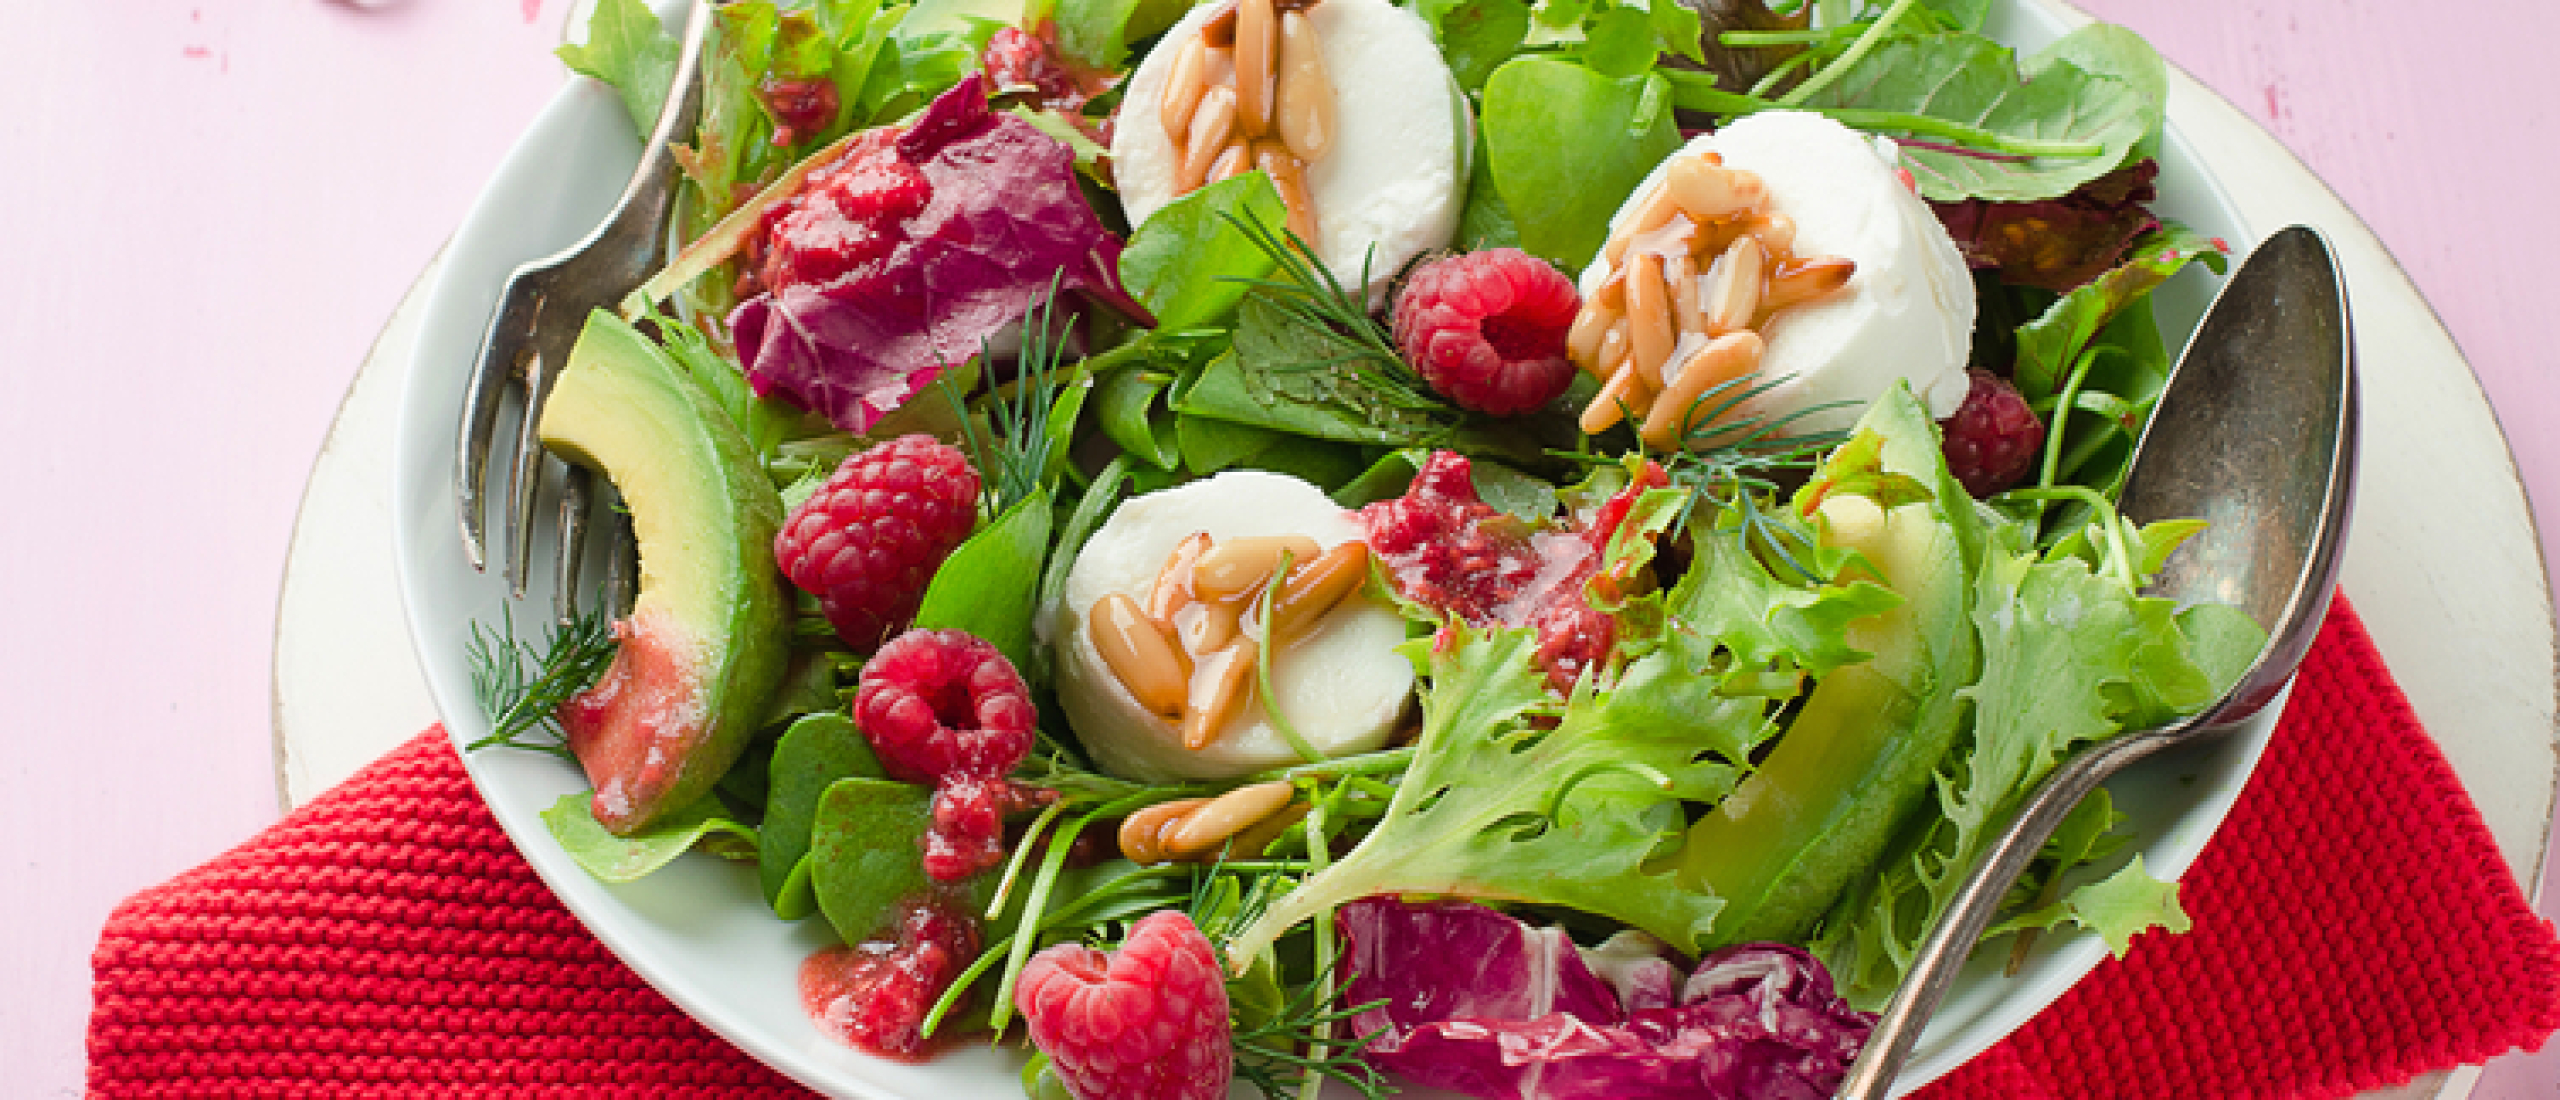 Recept met salade met geitenkaas en frambozen